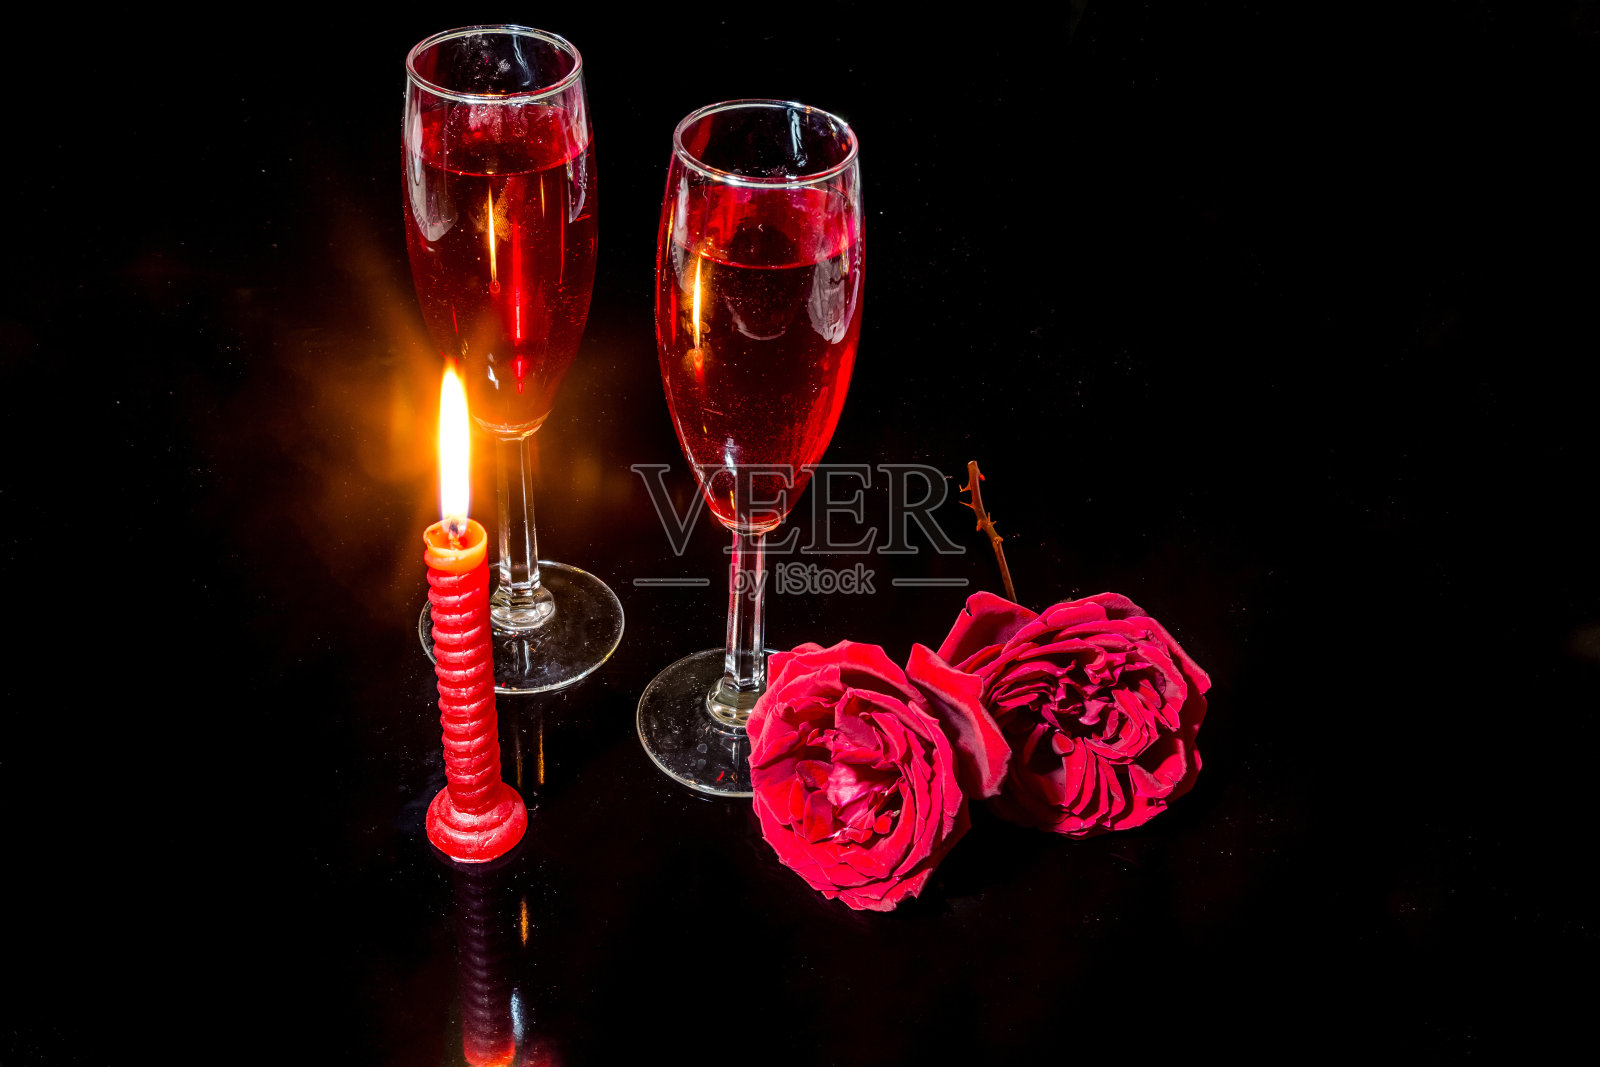 烛光、红玫瑰、红酒杯，映衬着黑暗的背景，营造出浪漫的氛围。照片摄影图片